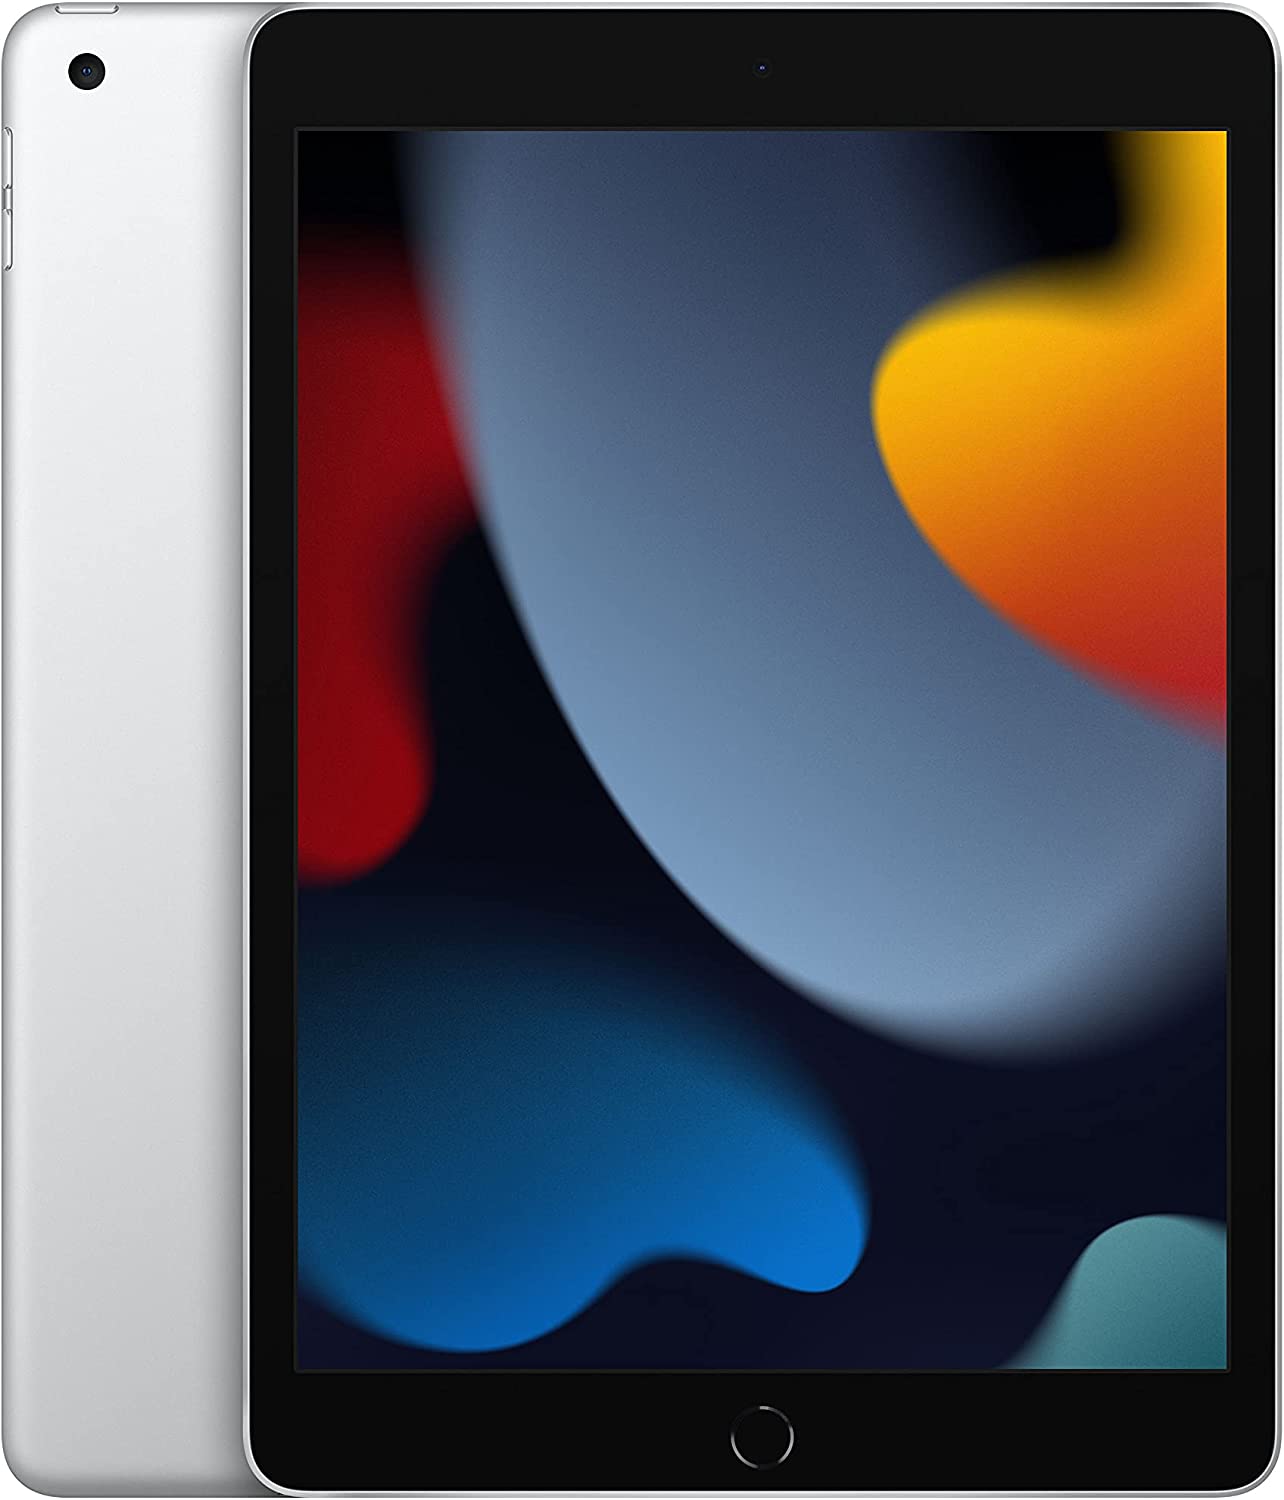 Quelle est la meilleure taille d'écran pour un iPad ? 